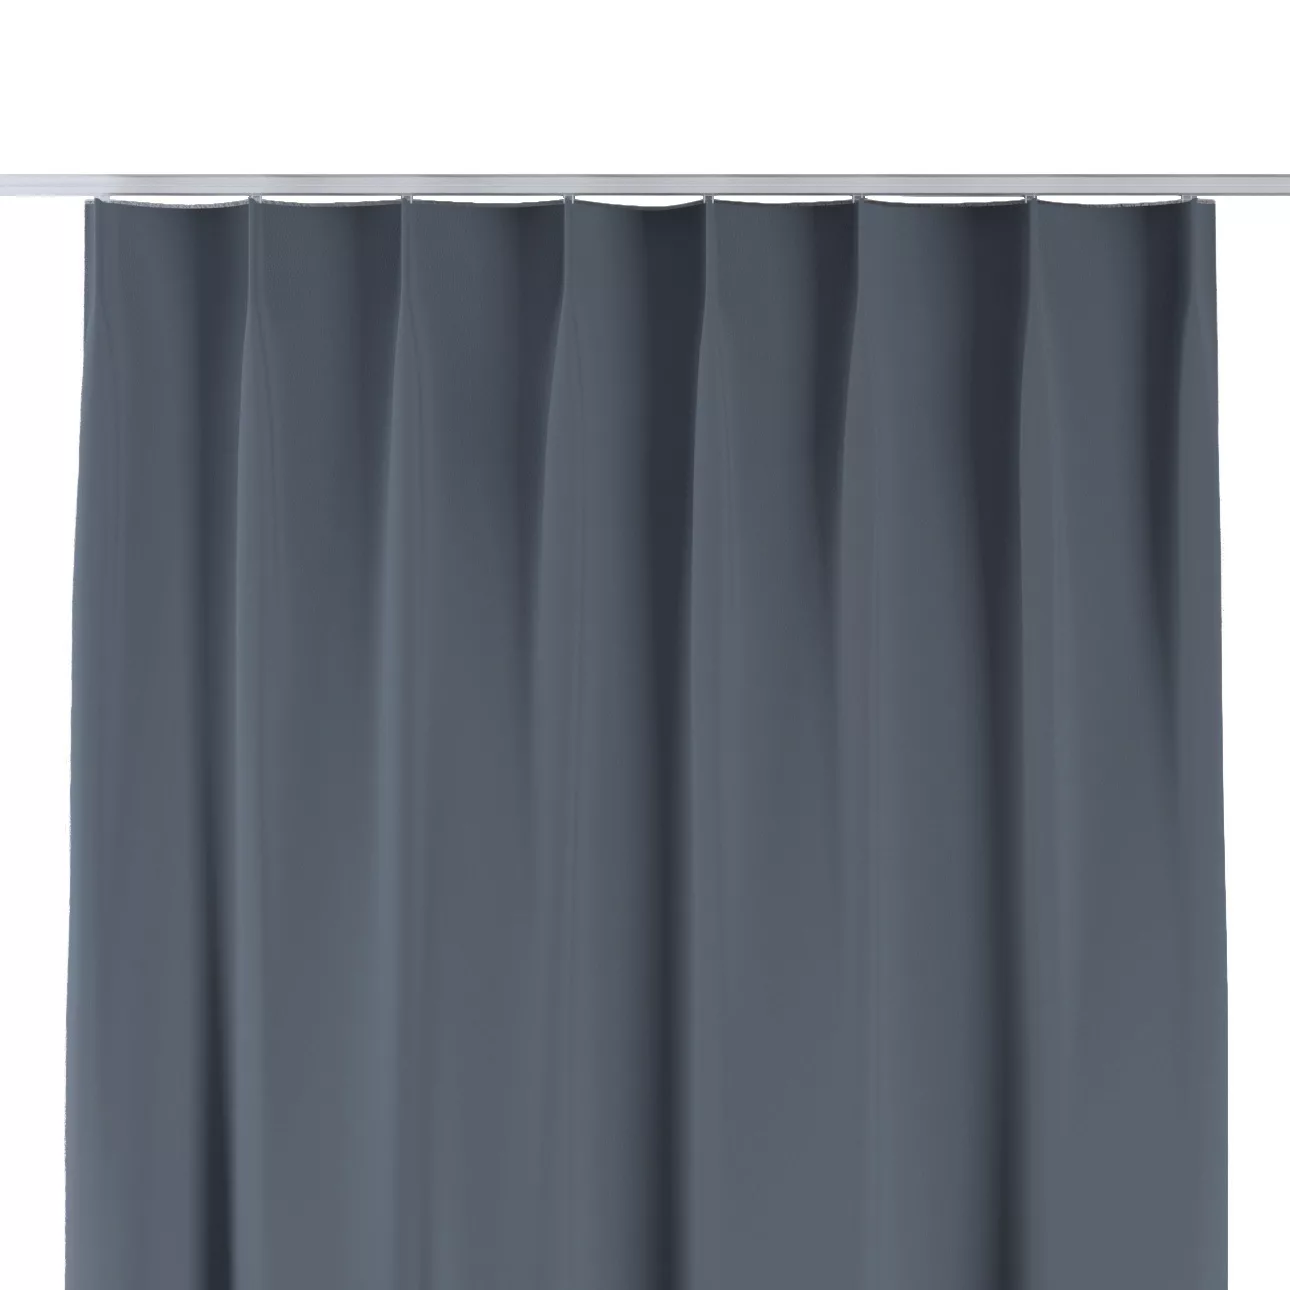 Vorhang mit flämischen 1-er Falten, anthrazit, Blackout 300 cm (269-50) günstig online kaufen